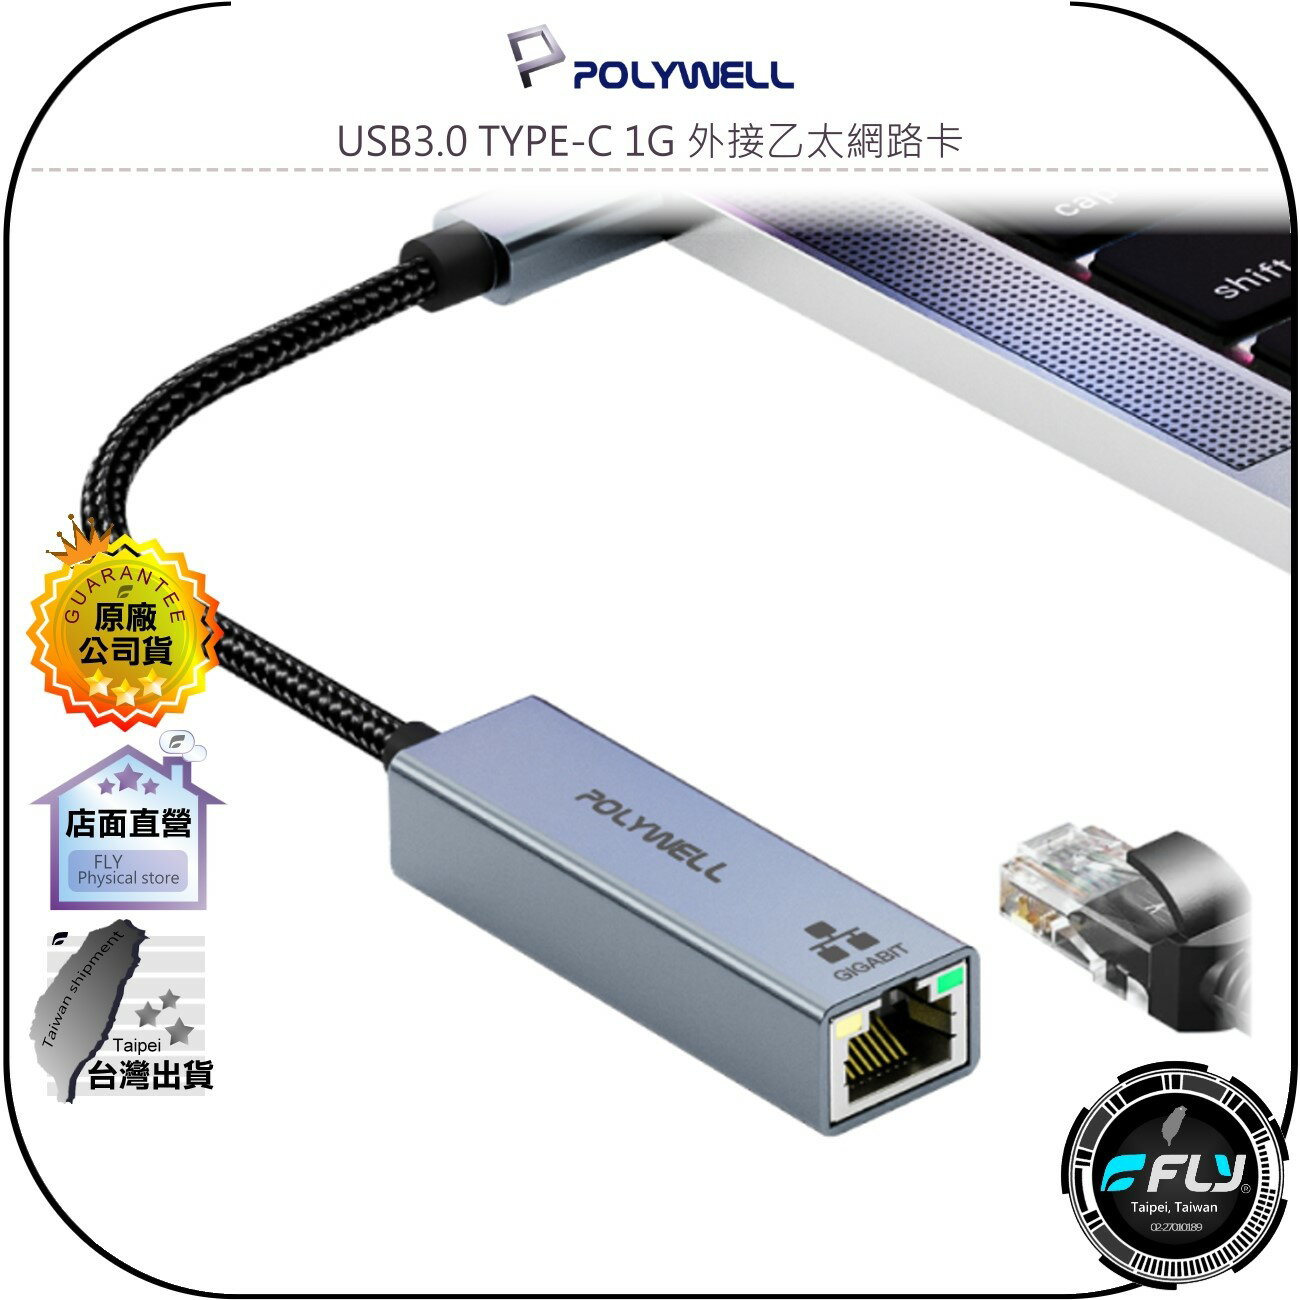 【飛翔商城】POLYWELL 寶利威爾 USB3.0 TYPE-C 1G 外接乙太網路卡◉公司貨◉Gigabit乙太網卡